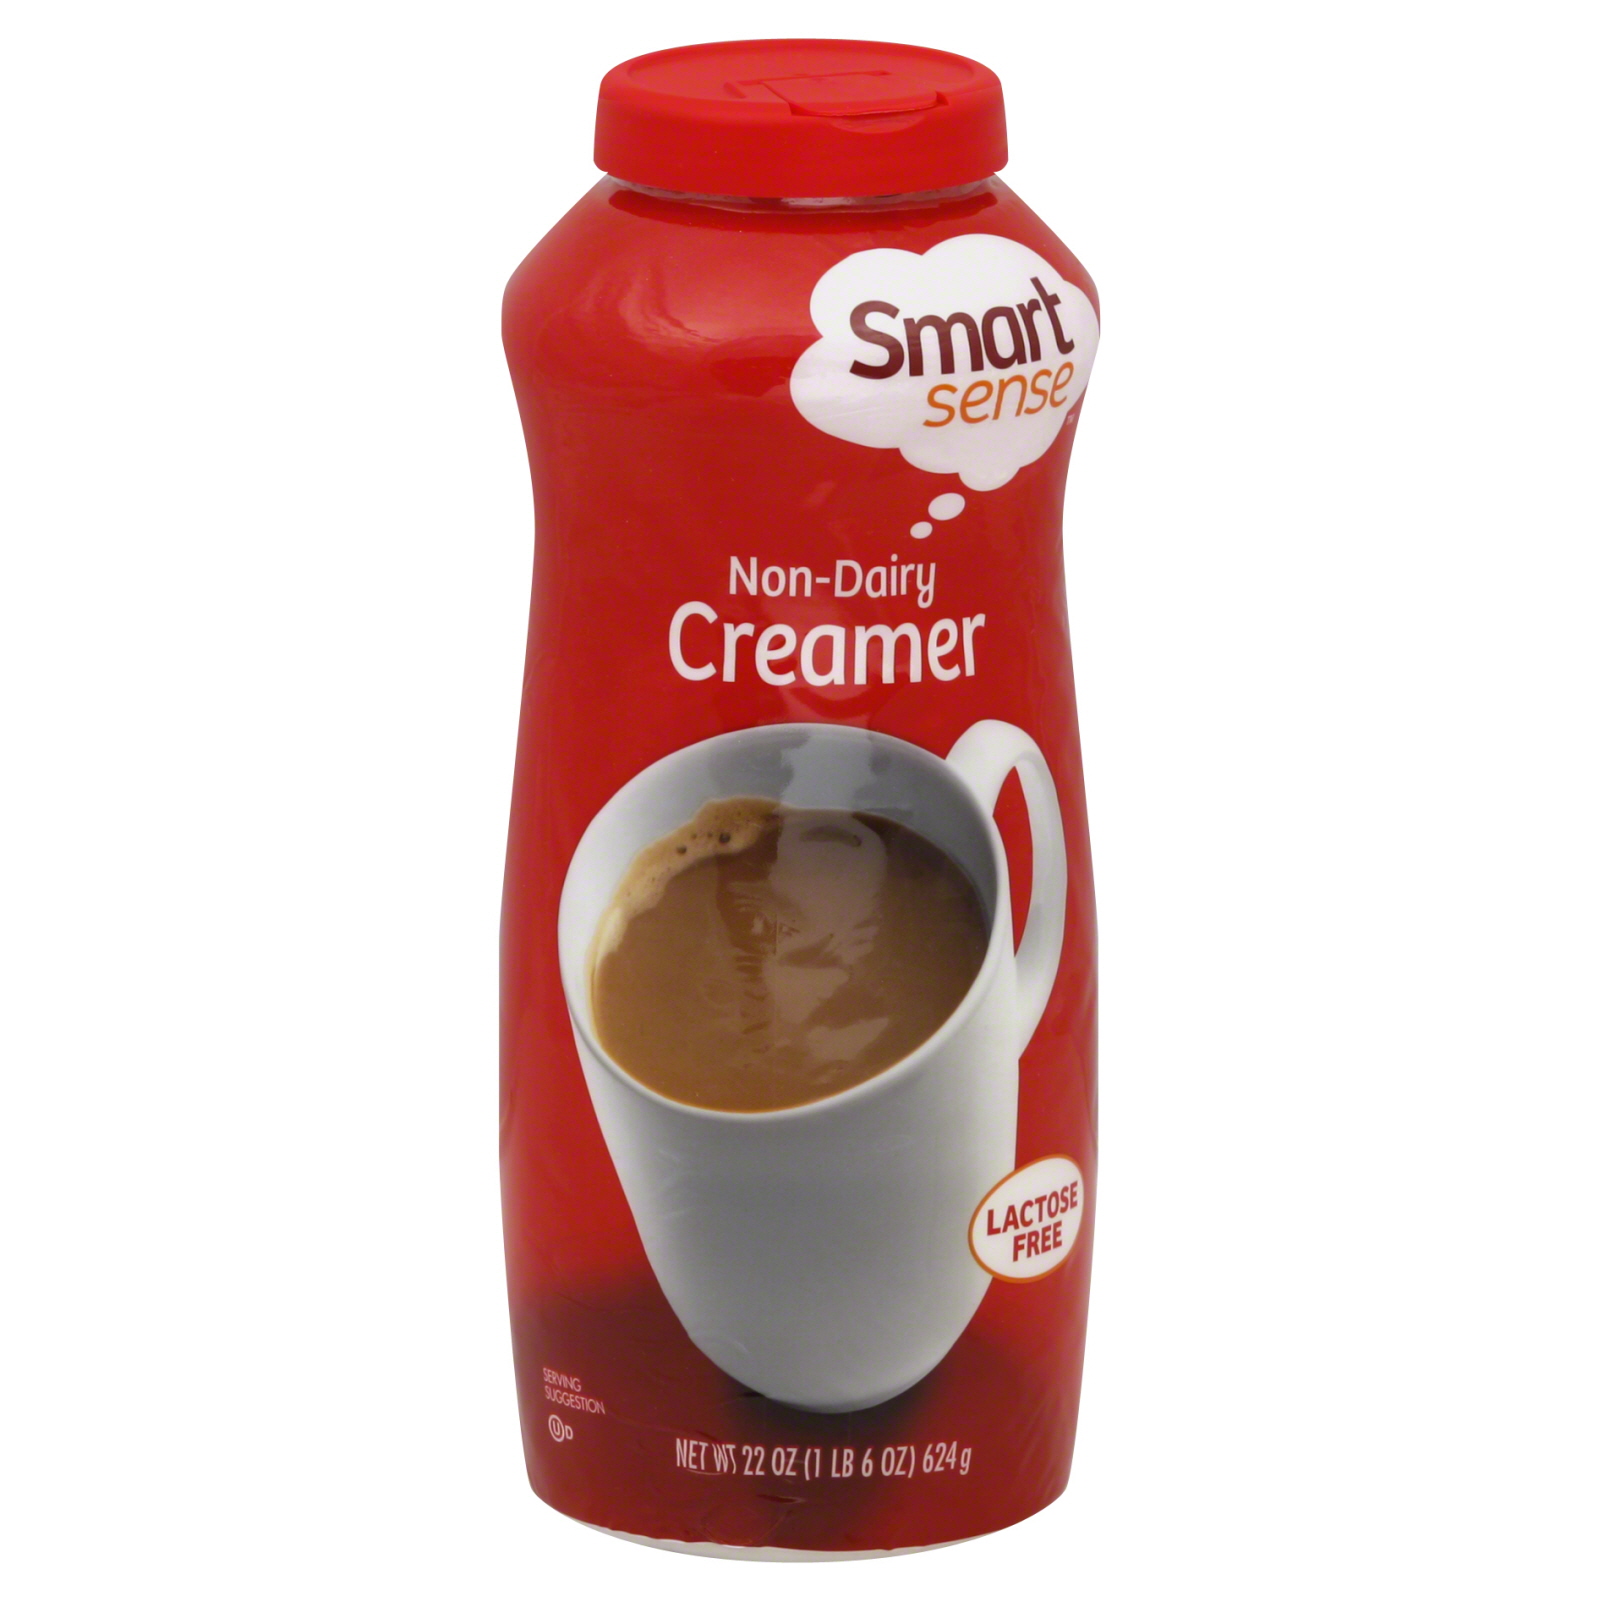 Smart Sense Creamer, Non-Dairy 22 oz (1 lb 6 oz) 624 g